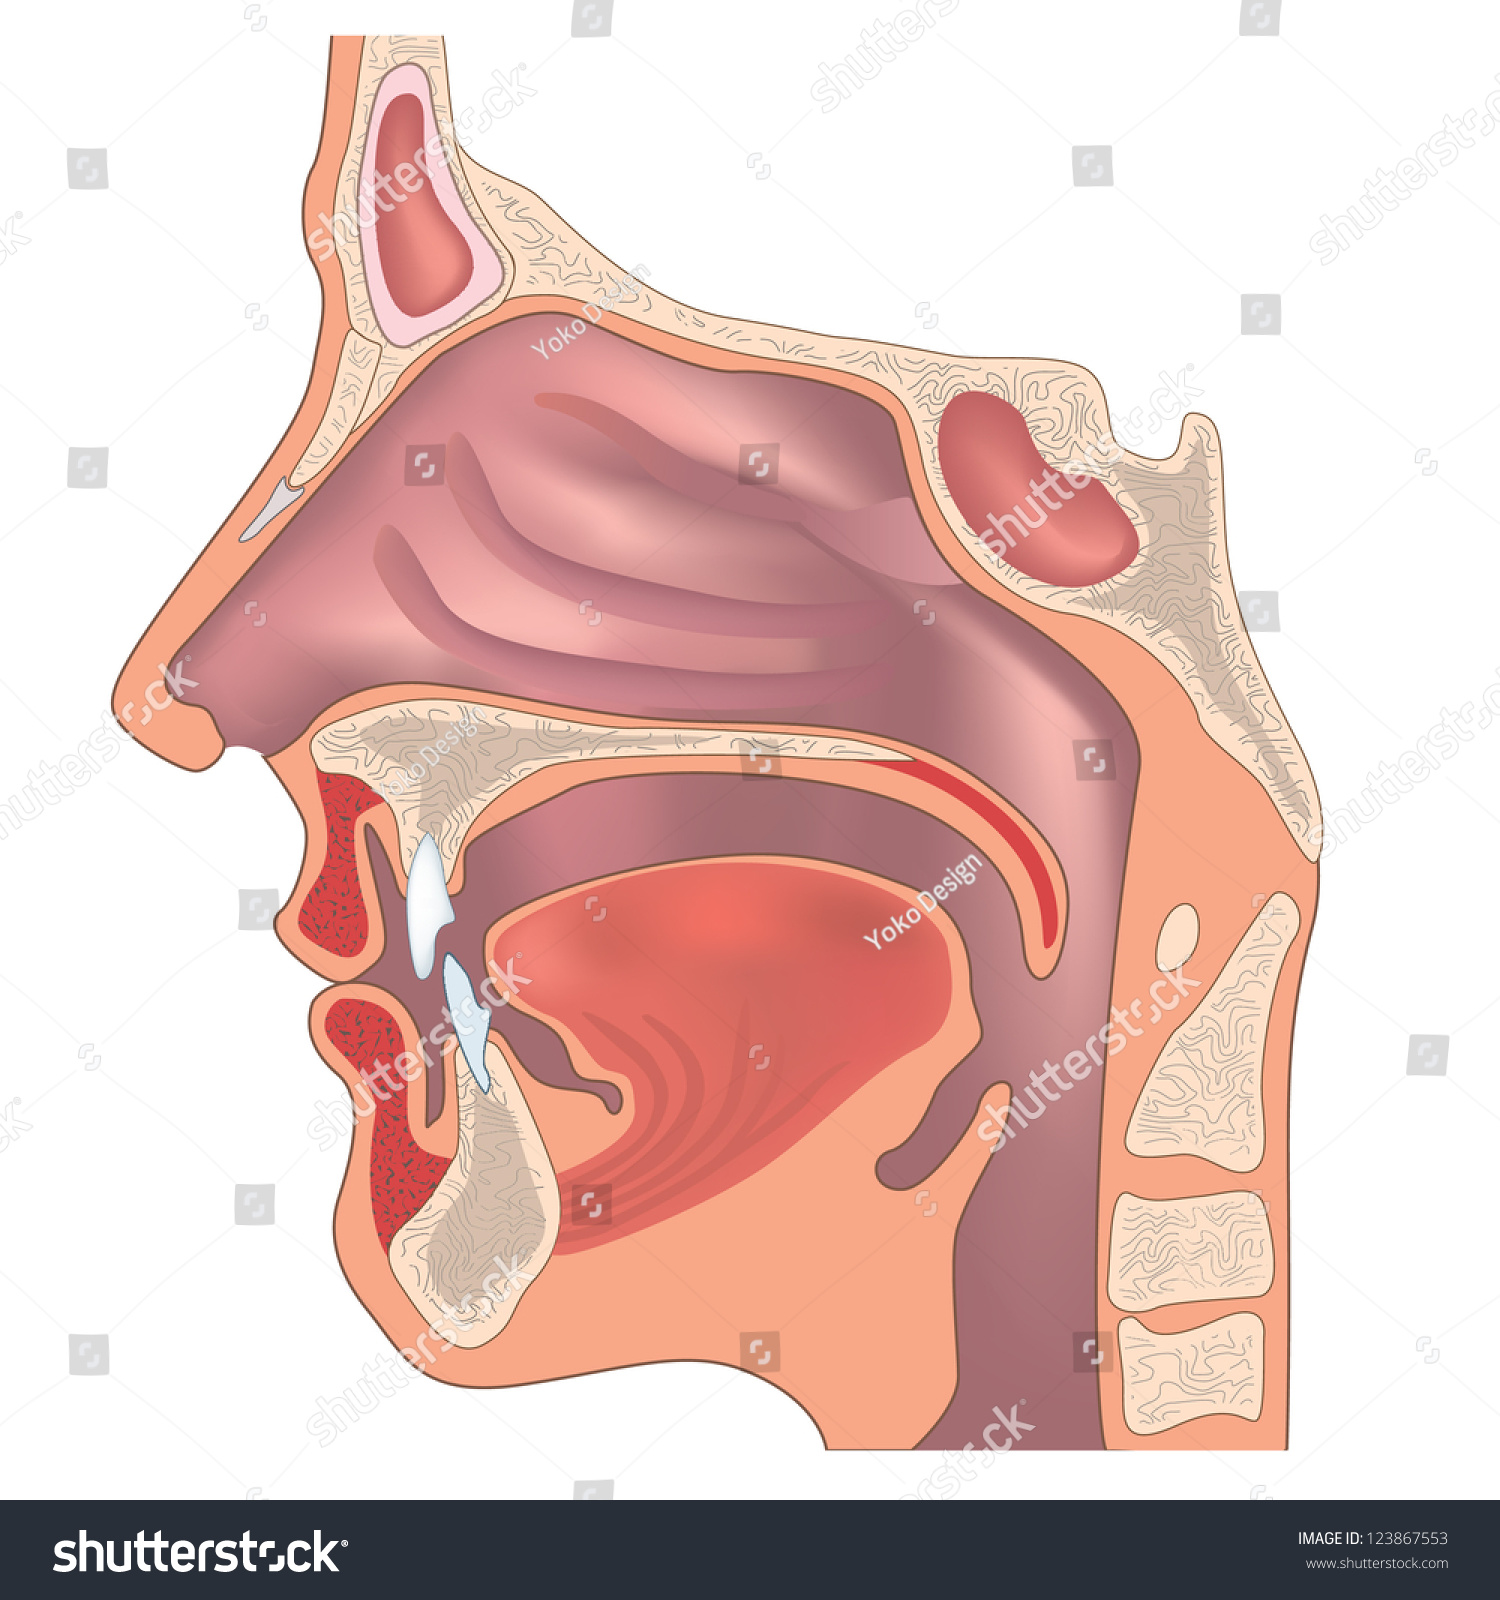 鼻子和喉咙的解剖学 人体器官结构 醫學符號库存矢量图 免版税